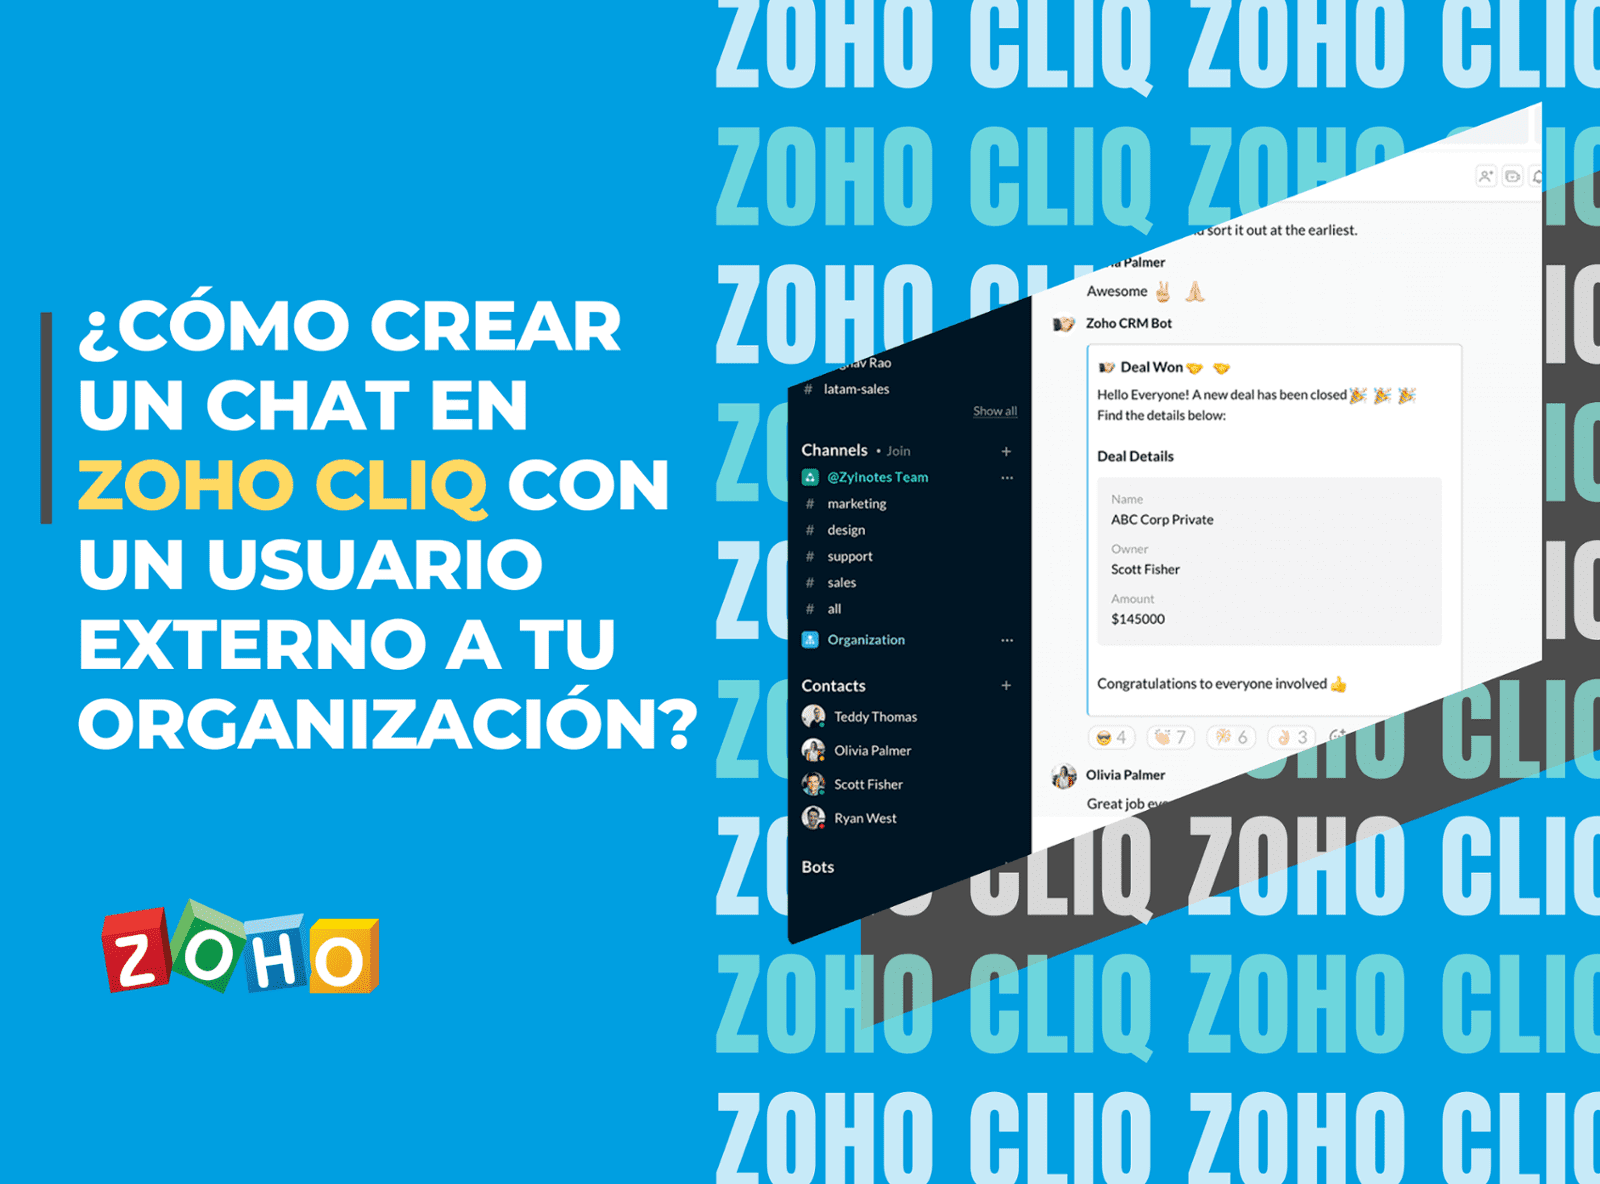 Tip #2 Zoho - ¿Cómo crear un chat con un usuario externo a mi organización en Zoho Cliq?